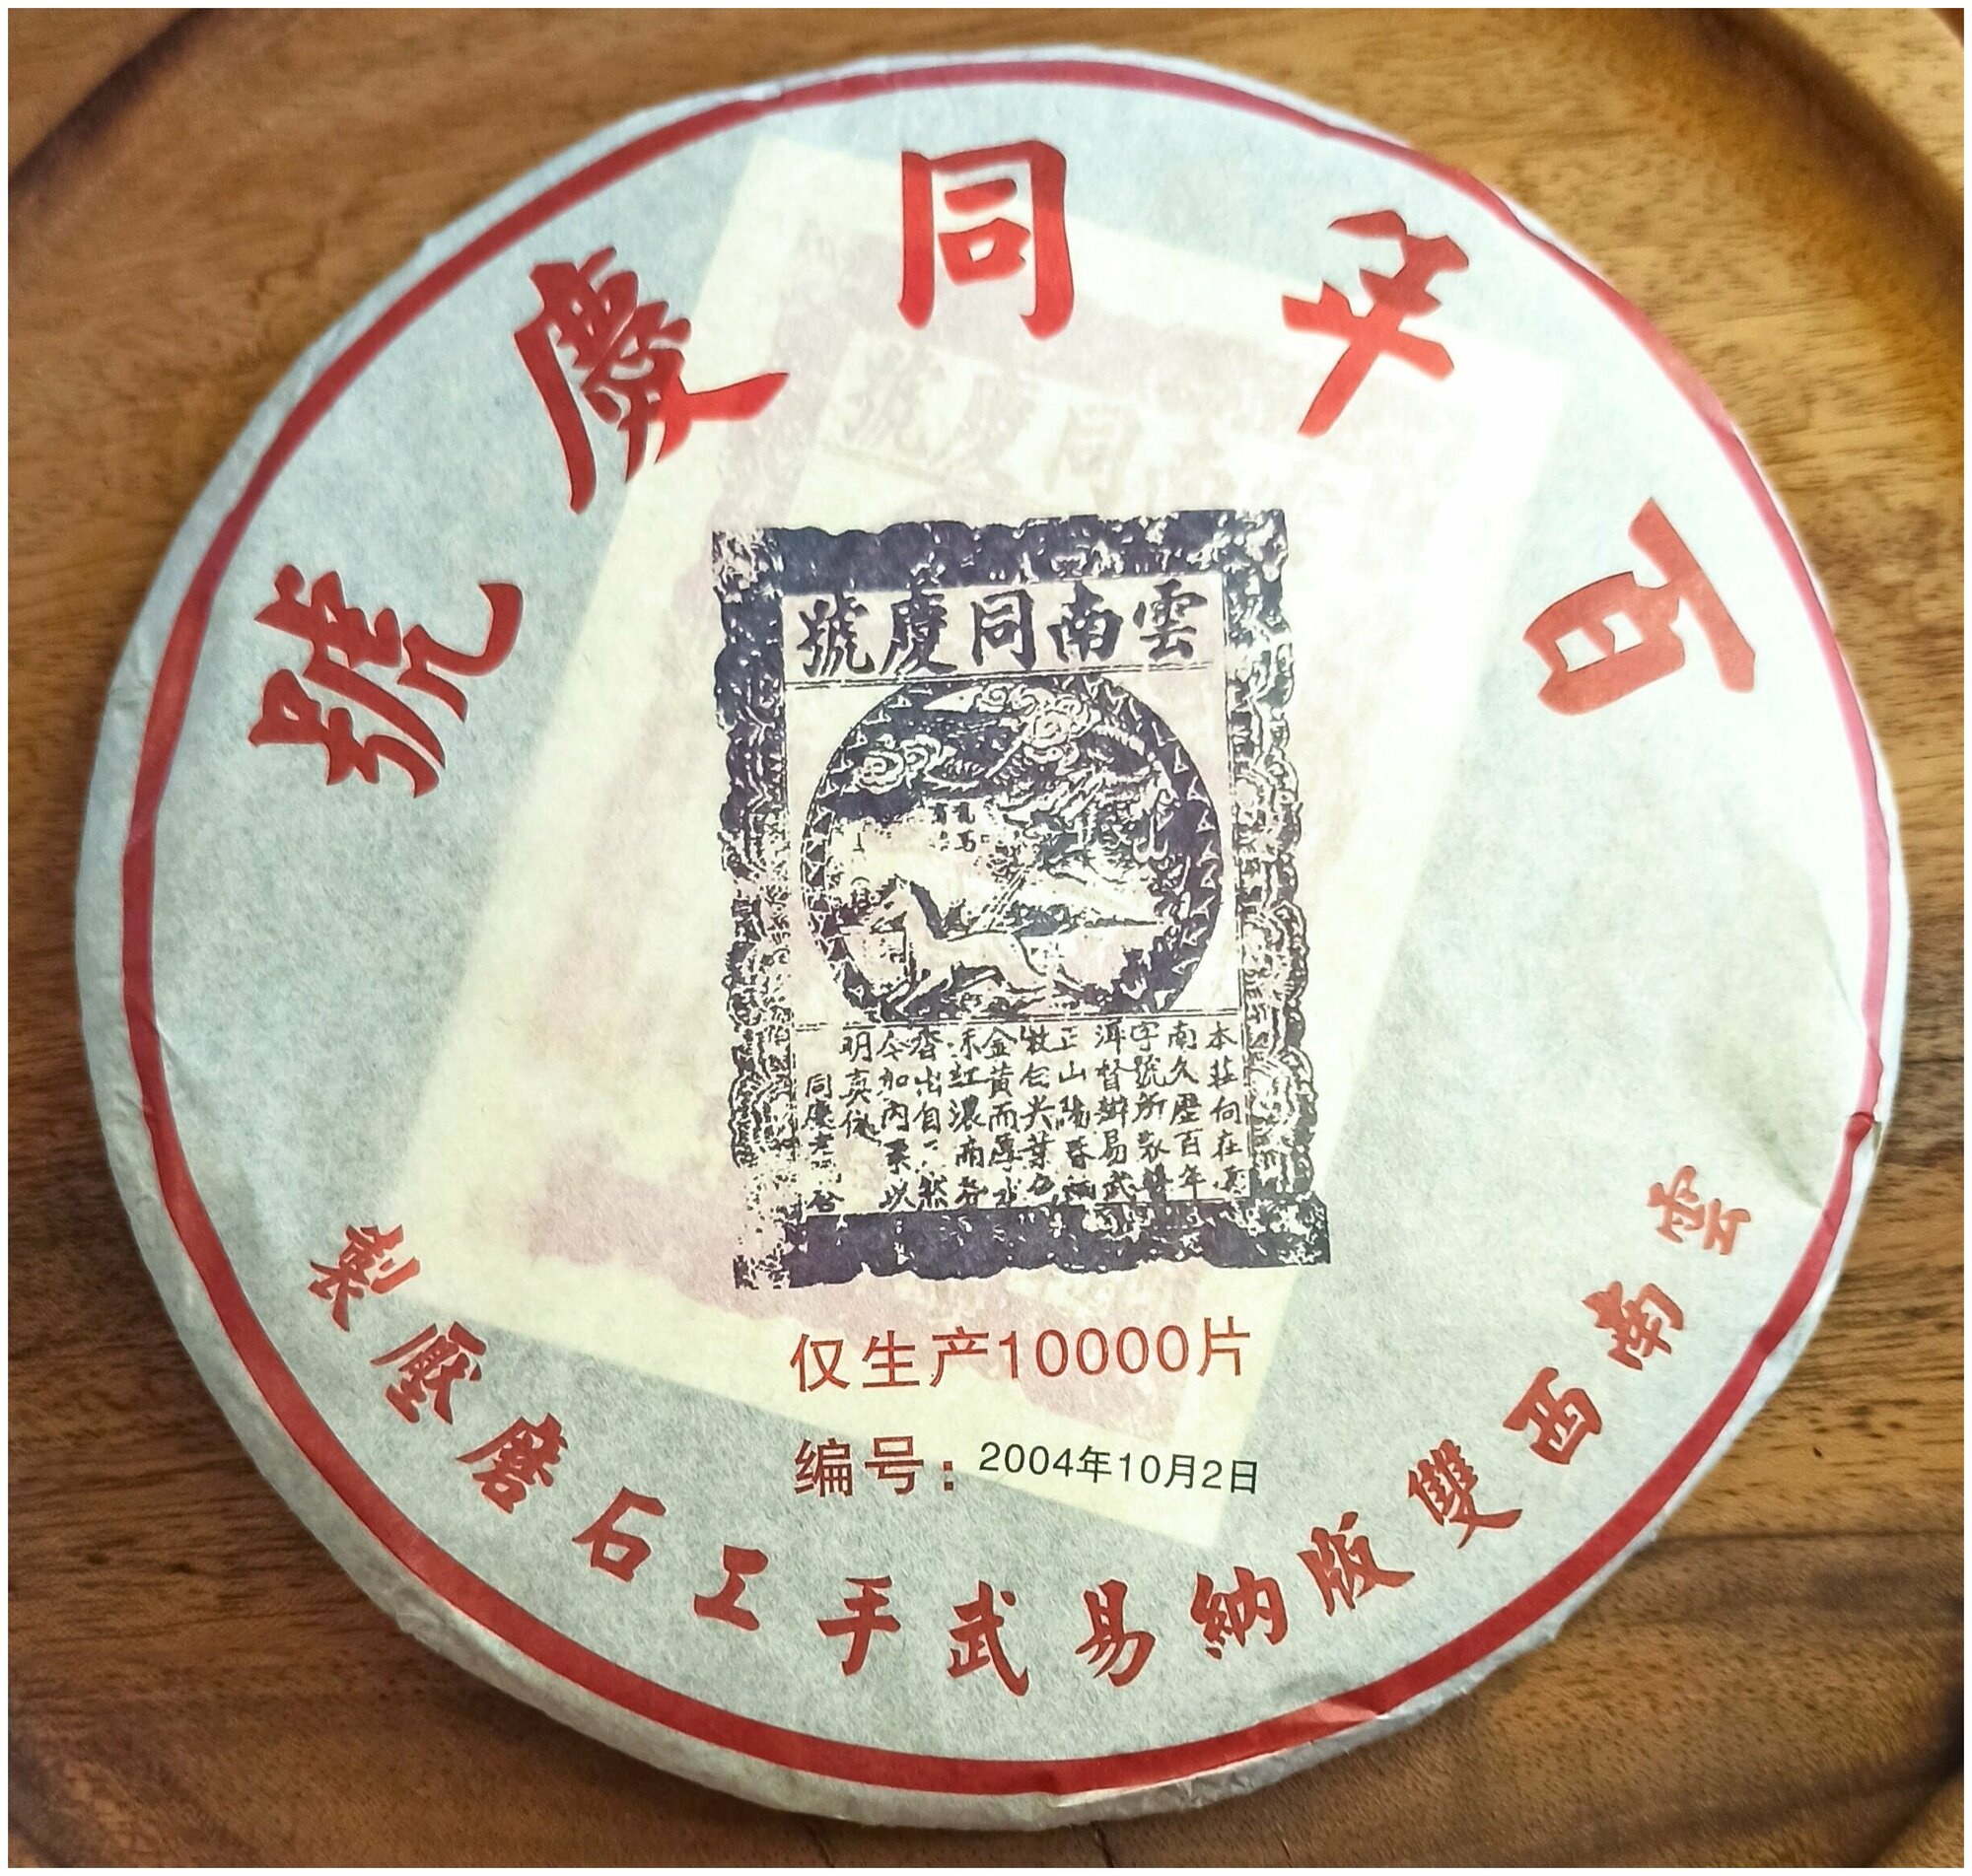 Шу пуэр выдержанный. И У Тун Цин Хао. 2015 год. Качественный натуральный китайский чай. Бинча 357 грамм.